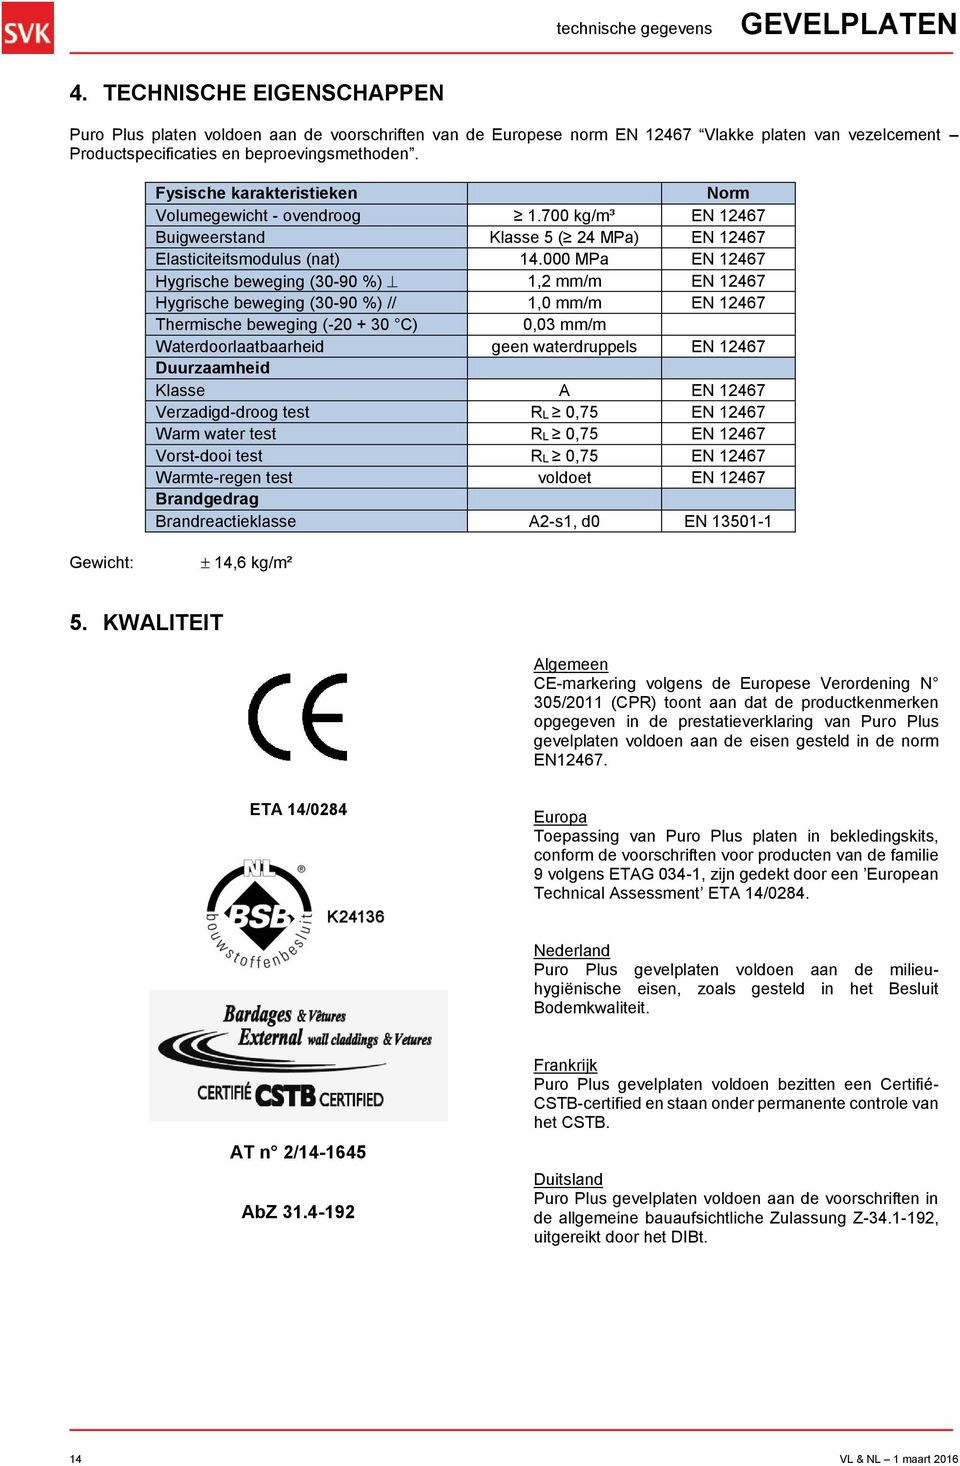 Fysische karakteristieken Norm Volumegewicht - ovendroog 1.700 kg/m³ EN 12467 Buigweerstand Klasse 5 ( 24 MPa) EN 12467 Elasticiteitsmodulus (nat) 14.